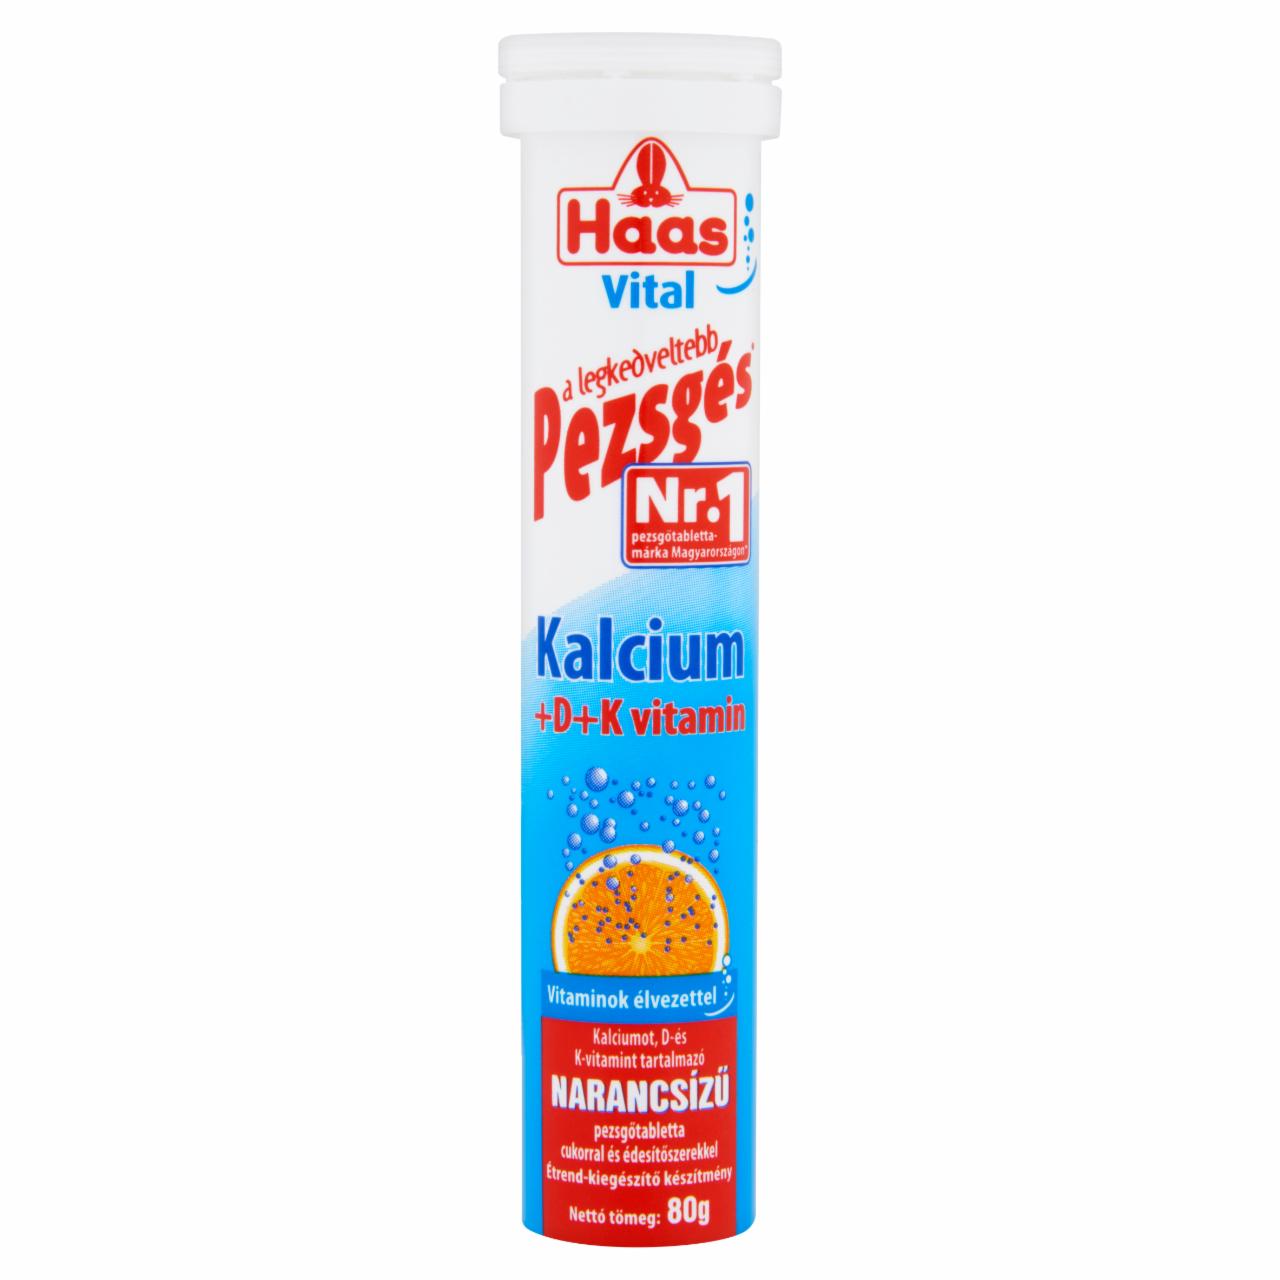 Képek - Haas Vital Kalcium + D + K- vitamin narancsízű étrend-kiegészítő pezsgőtabletta 80 g